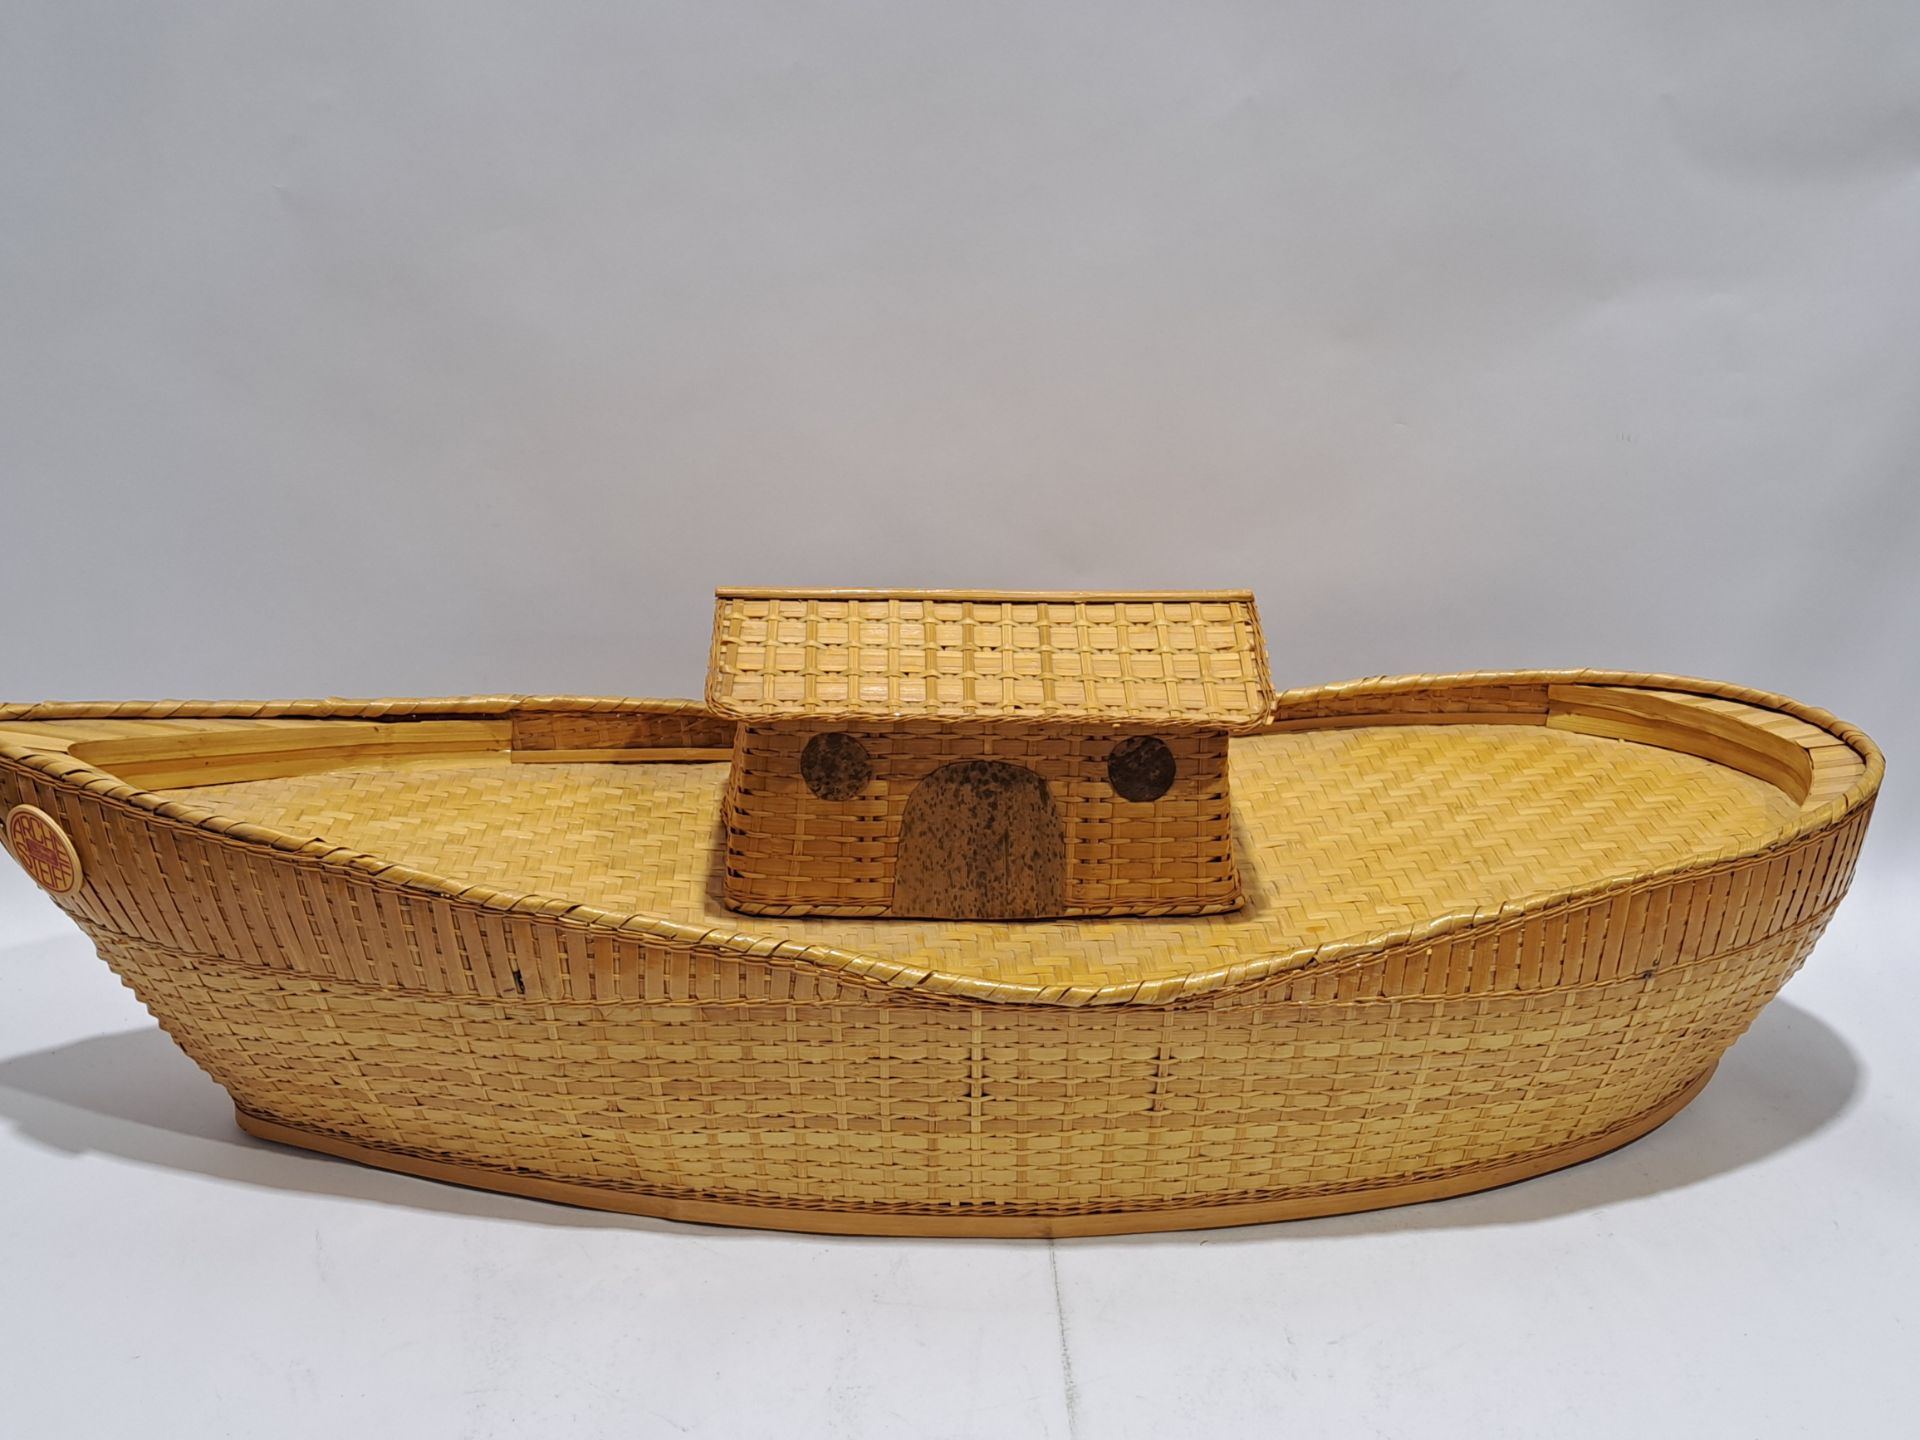 Steiff Noah's Ark - Image 2 of 4